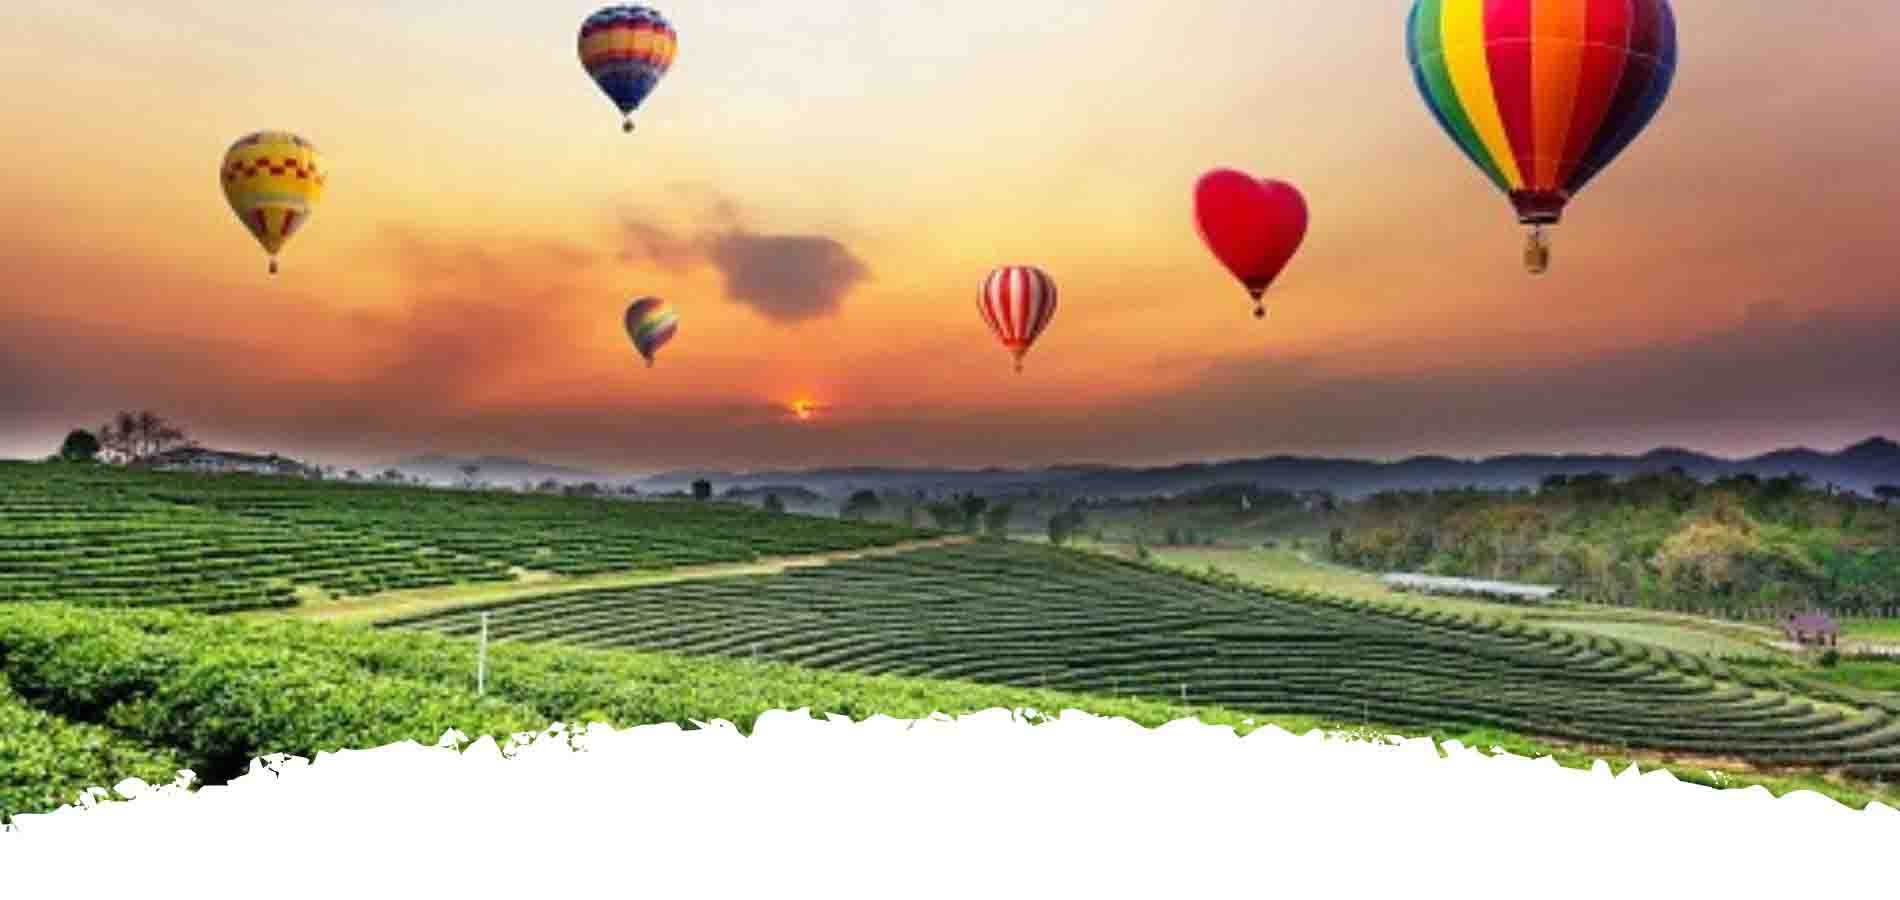 hot air Bballooning in sri lanka